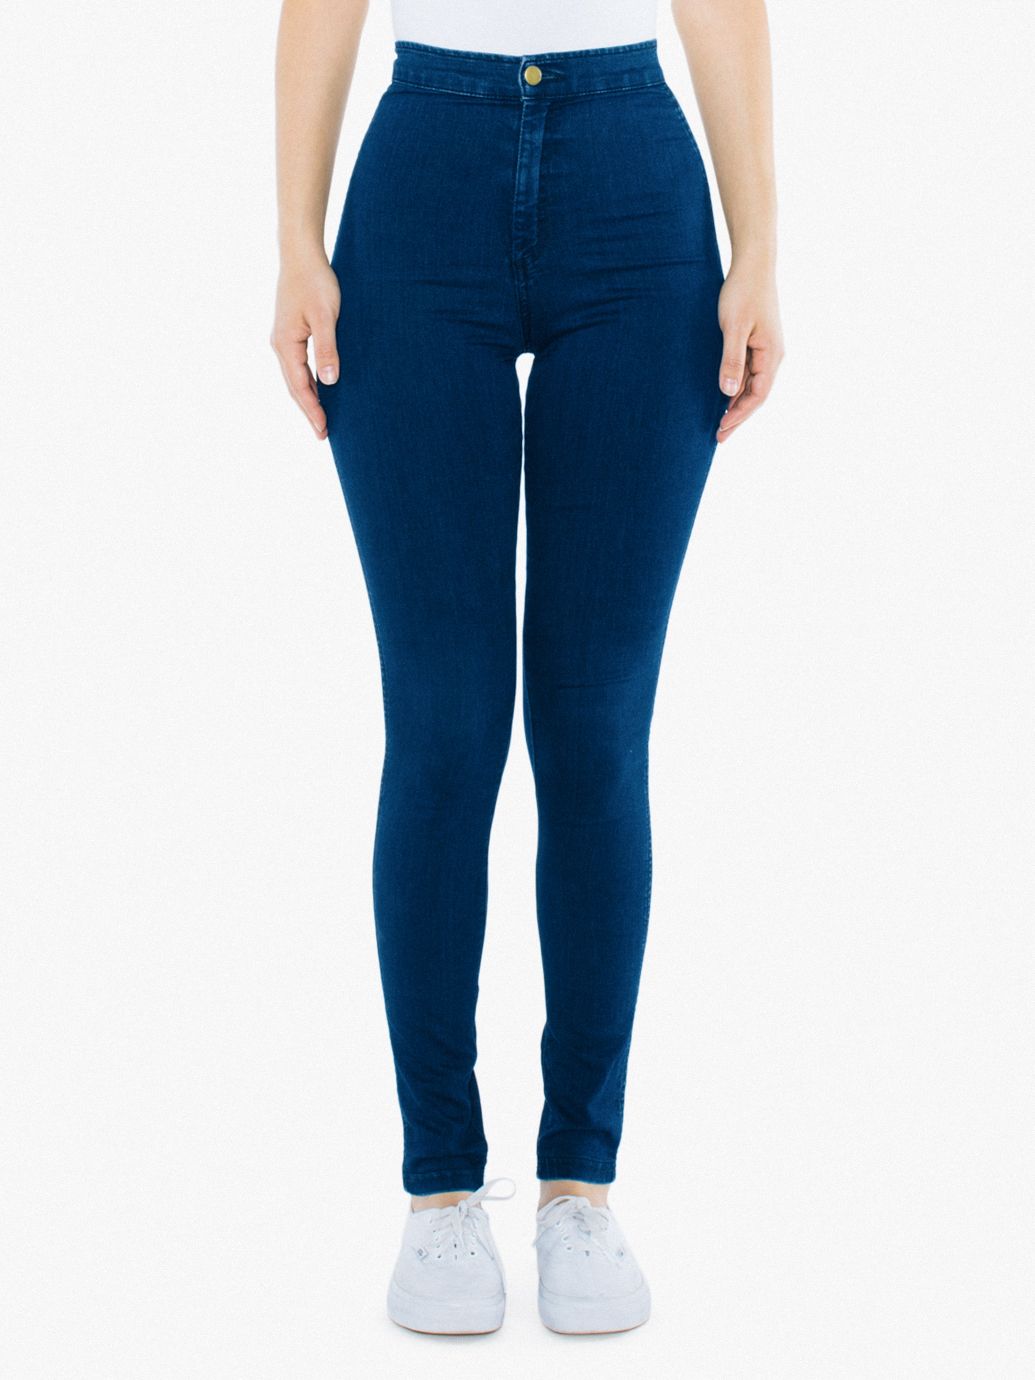 Women's Jeans | American Apparel